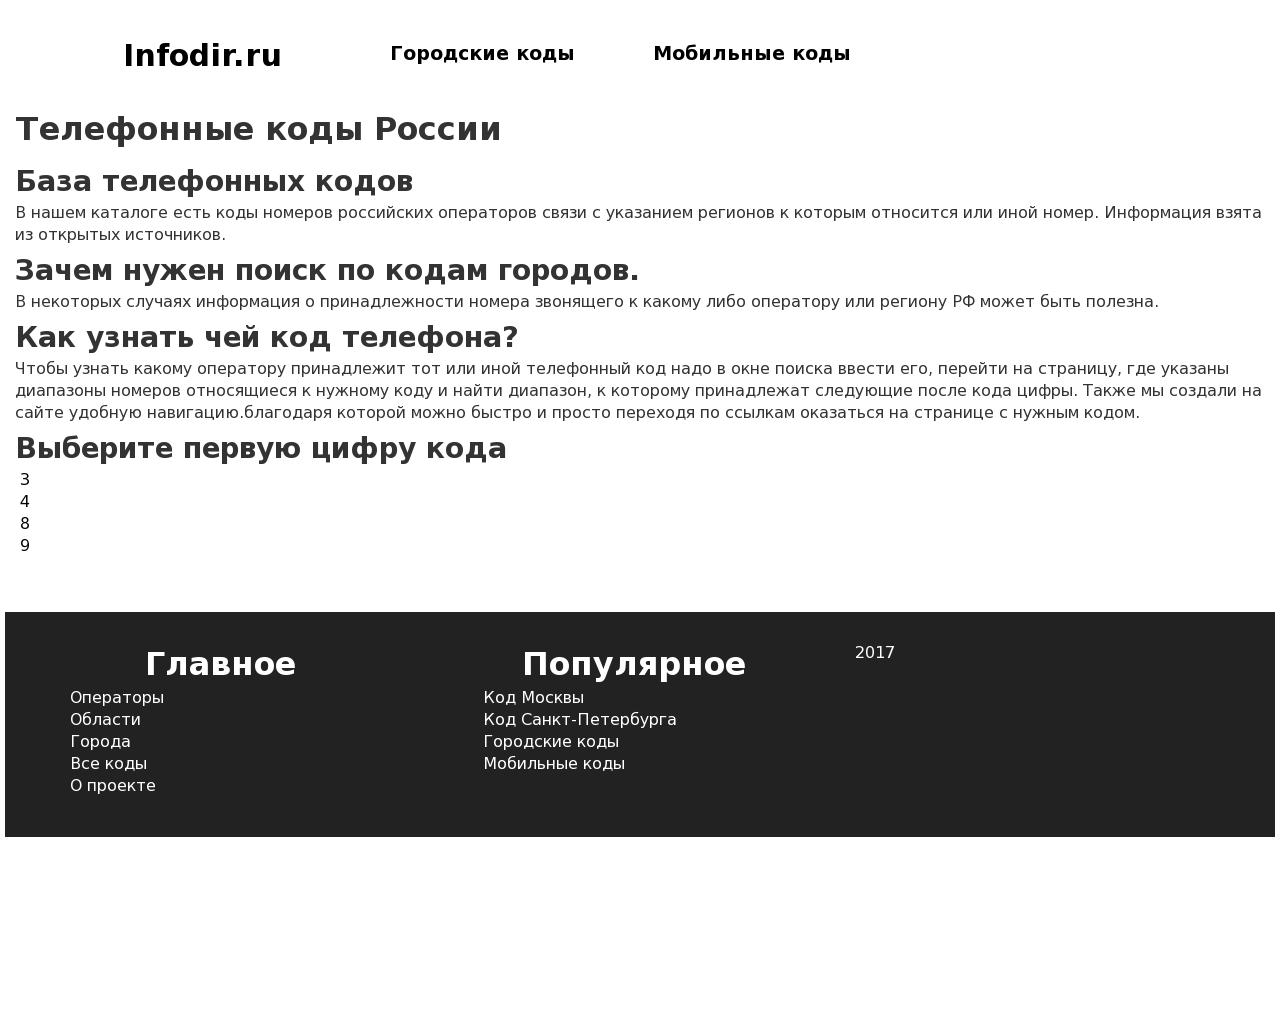 Изображение сайта infodir.ru в разрешении 1280x1024